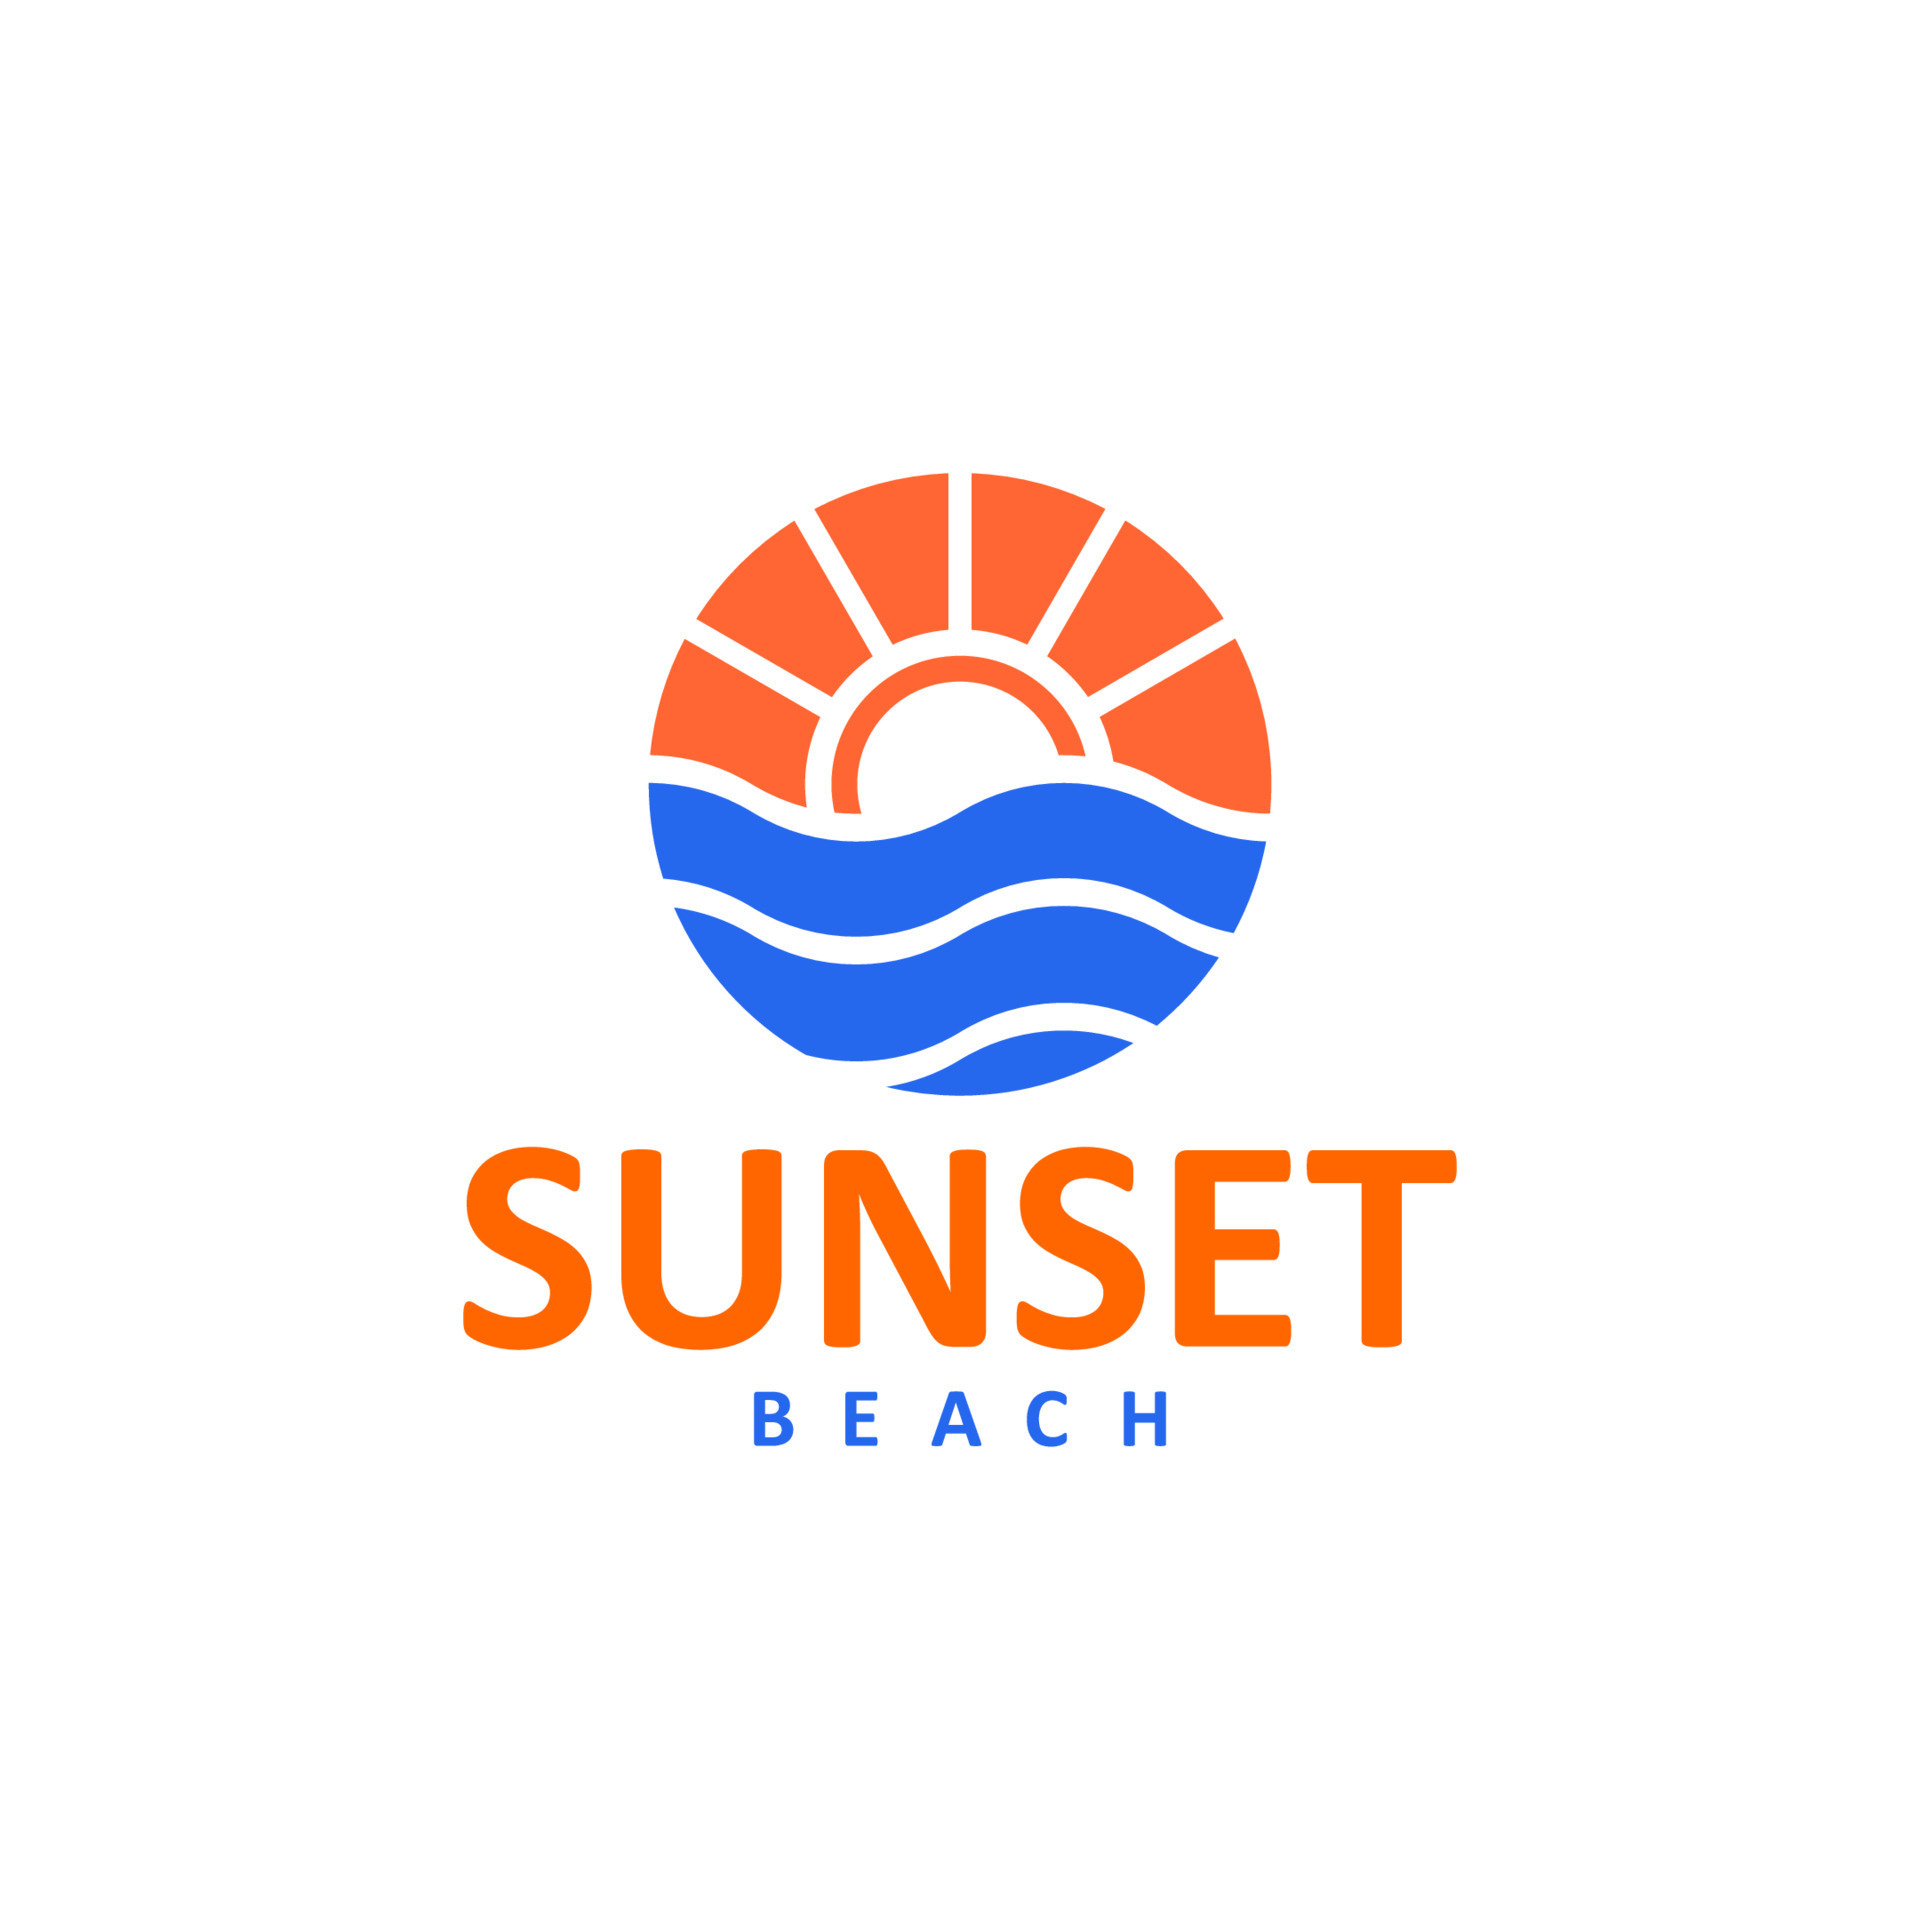 sunset beach logo for t-shirt design 10563172 Vector Art at Vecteezy